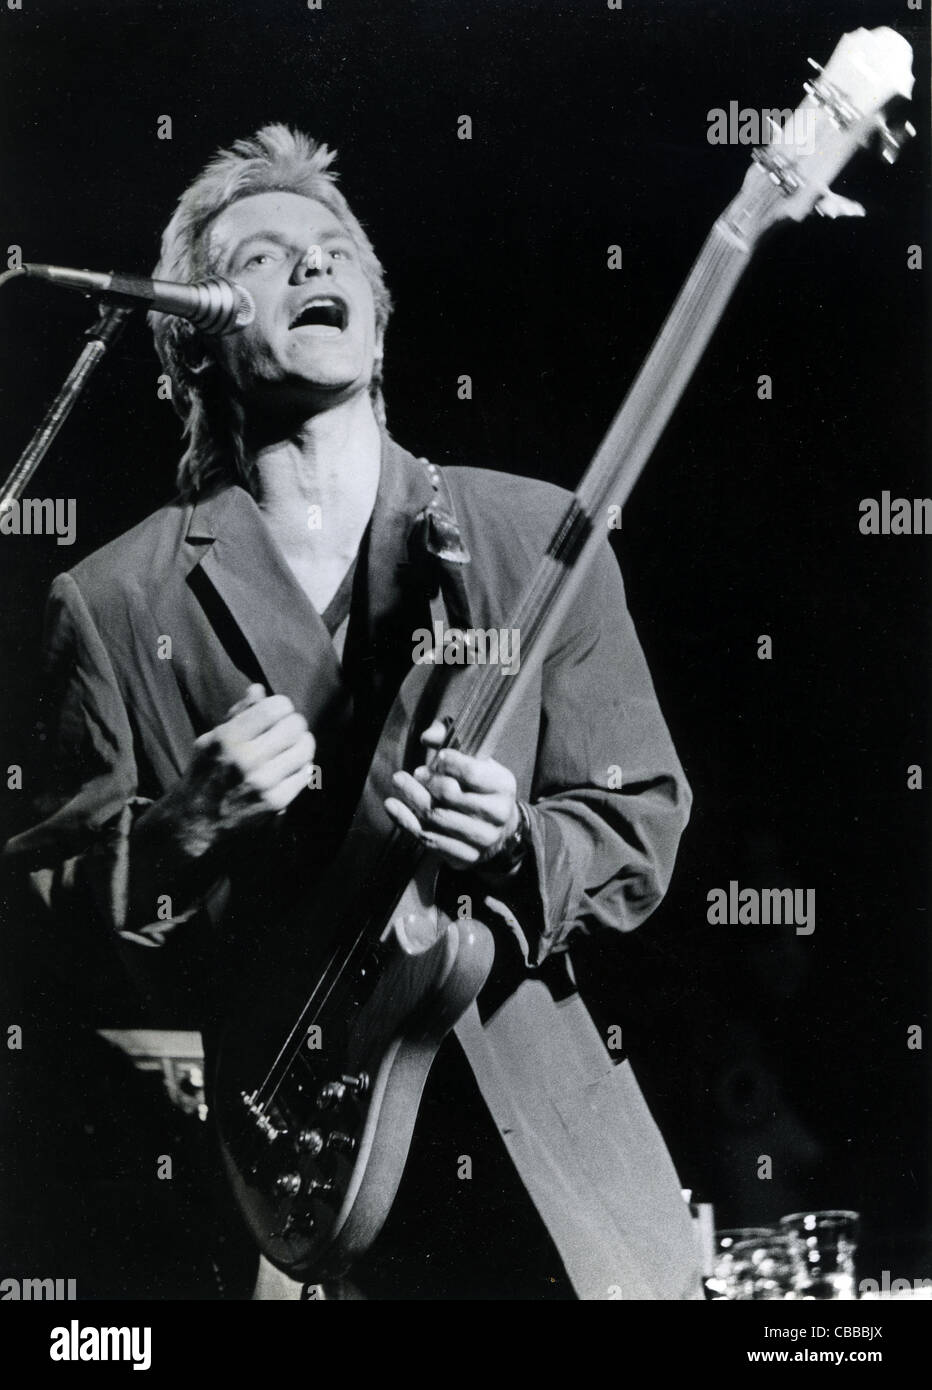 DIE Polizei UK Rock-Gruppe mit Sting im Jahr 1983. Foto Laurens van Houten Stockfoto